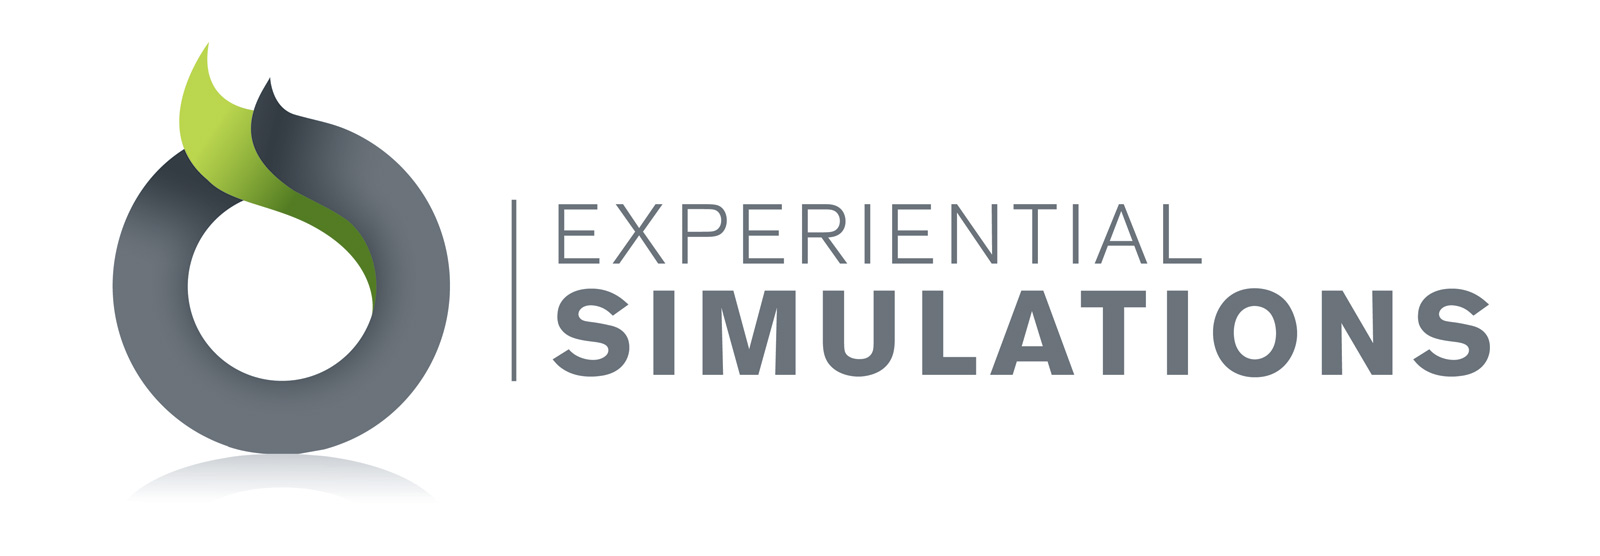 Experiential Simulations Logo